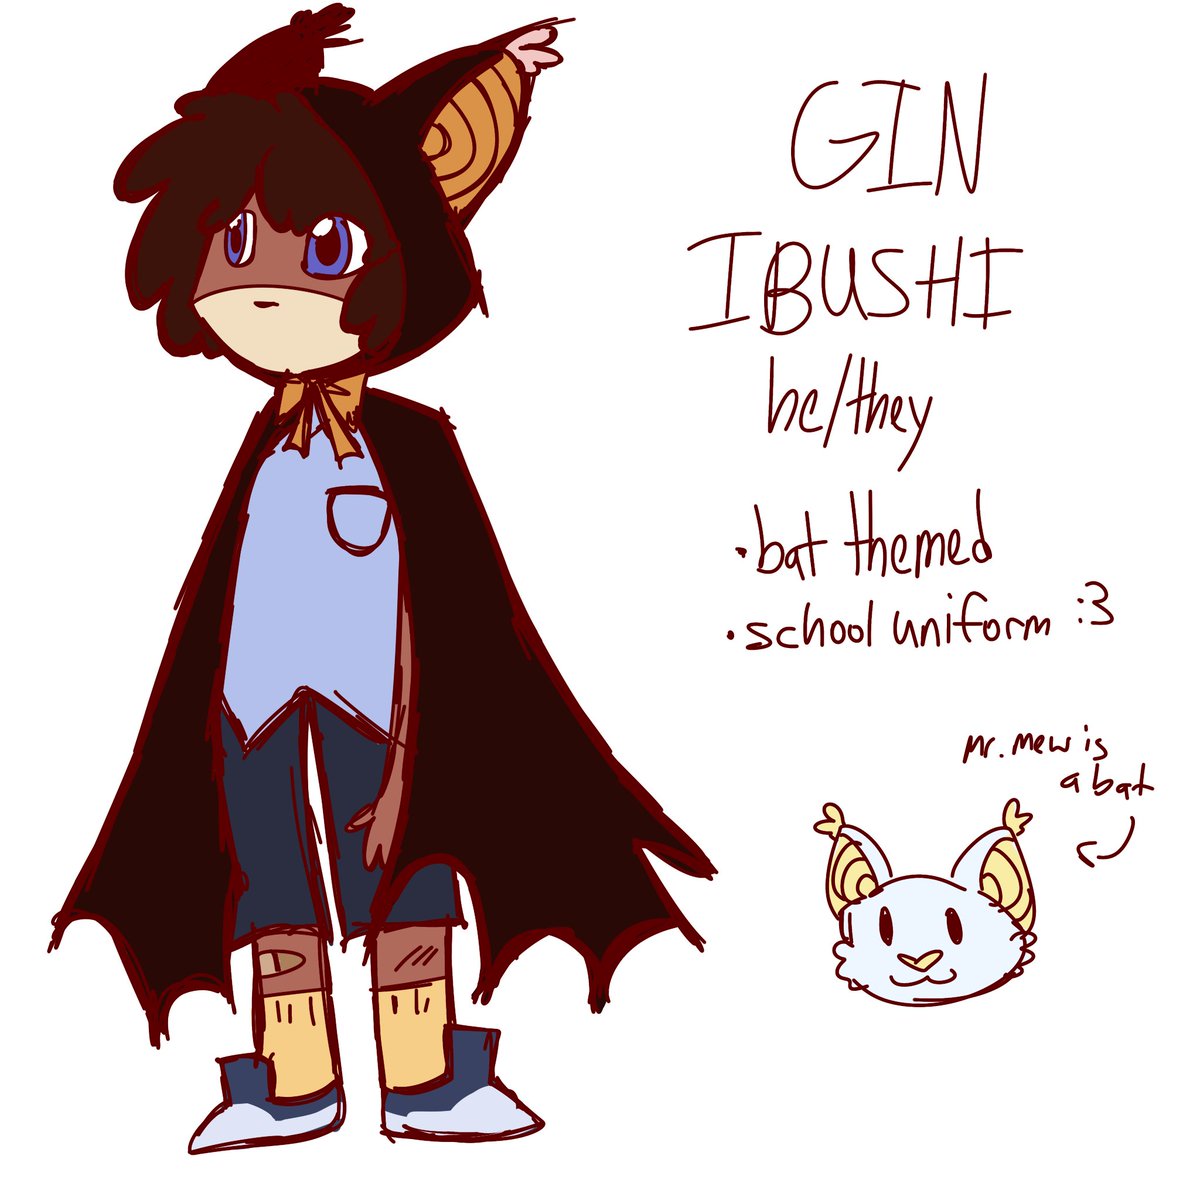 gin ibushi redesign :33 
#yttd #ginibushi